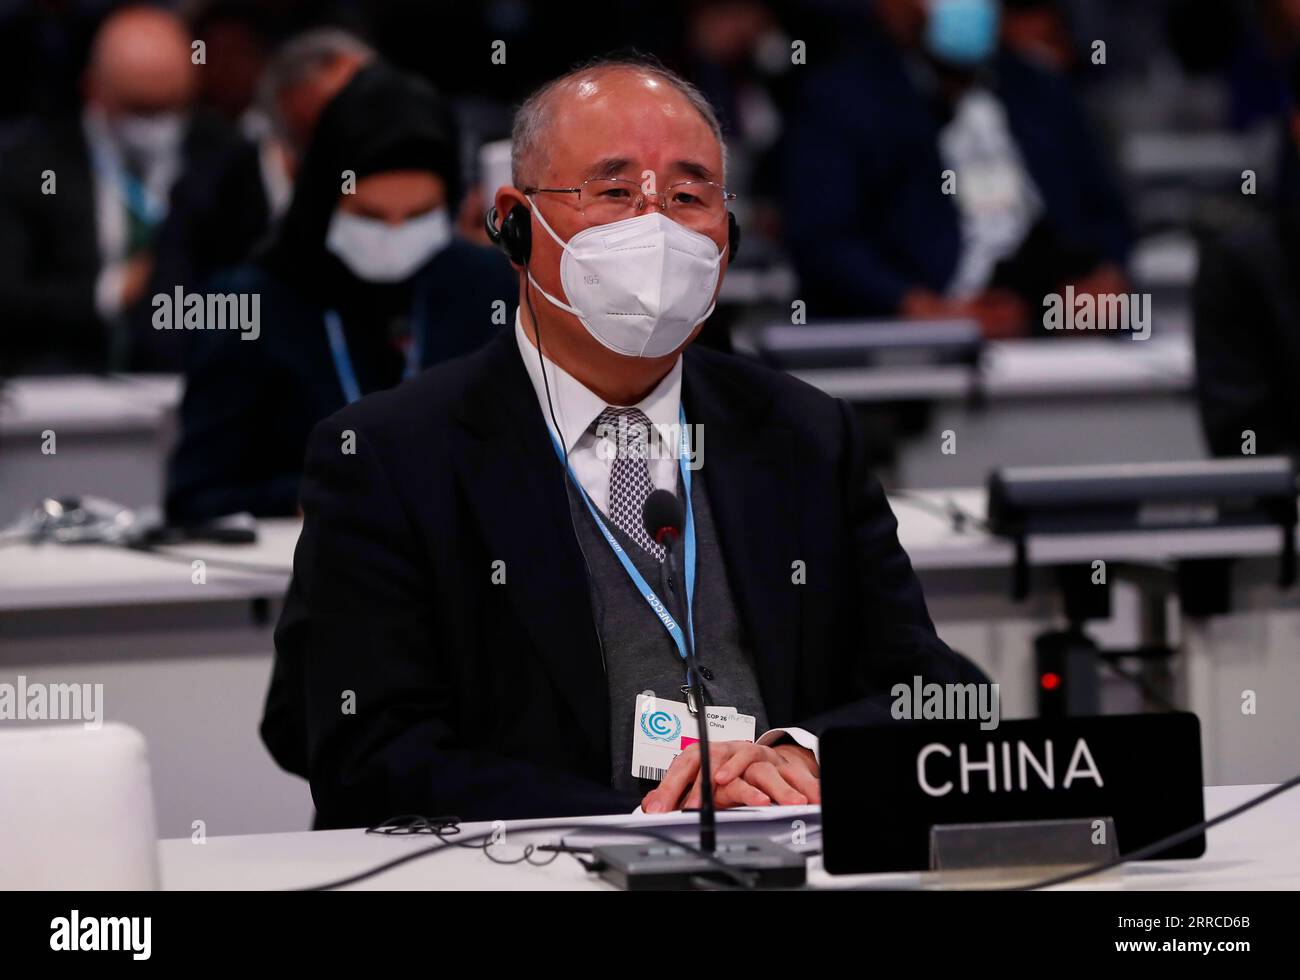 211102 -- GLASGOW, 2. November 2021 -- Xie Zhenhua, Chinas Sondergesandter für den Klimawandel, nimmt an der Eröffnungszeremonie des Weltgipfels der Staats- und Regierungschefs auf der 26. Konferenz der Vereinten Nationen über den Klimawandel COP26 in Glasgow, Großbritannien, am 1. November 2021 Teil. Die Staats- und Regierungschefs der Welt forderten am Montag konkrete Maßnahmen zur Bewältigung der Herausforderungen des Klimawandels auf der COP 26. GROSSBRITANNIEN-GLASGOW-COP26-WELTGIPFEL DER STAATS- UND REGIERUNGSCHEFS HANXYAN PUBLICATIONXNOTXINXCHN Stockfoto